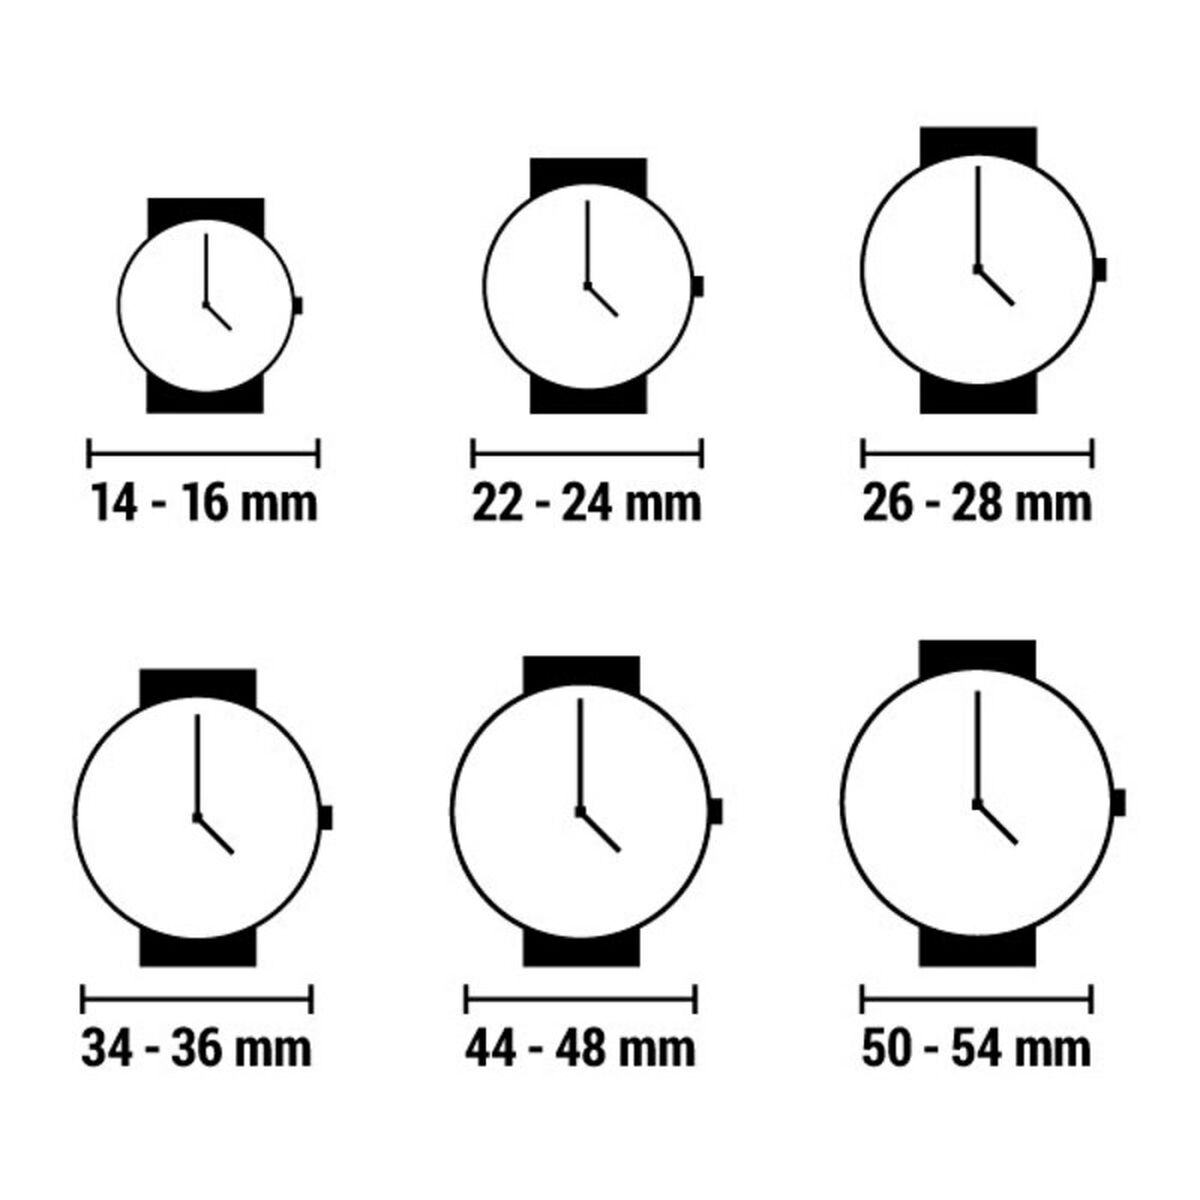 Horloge Dames Laura Biagiotti LB0018L-AZ (Ø 18 mm)